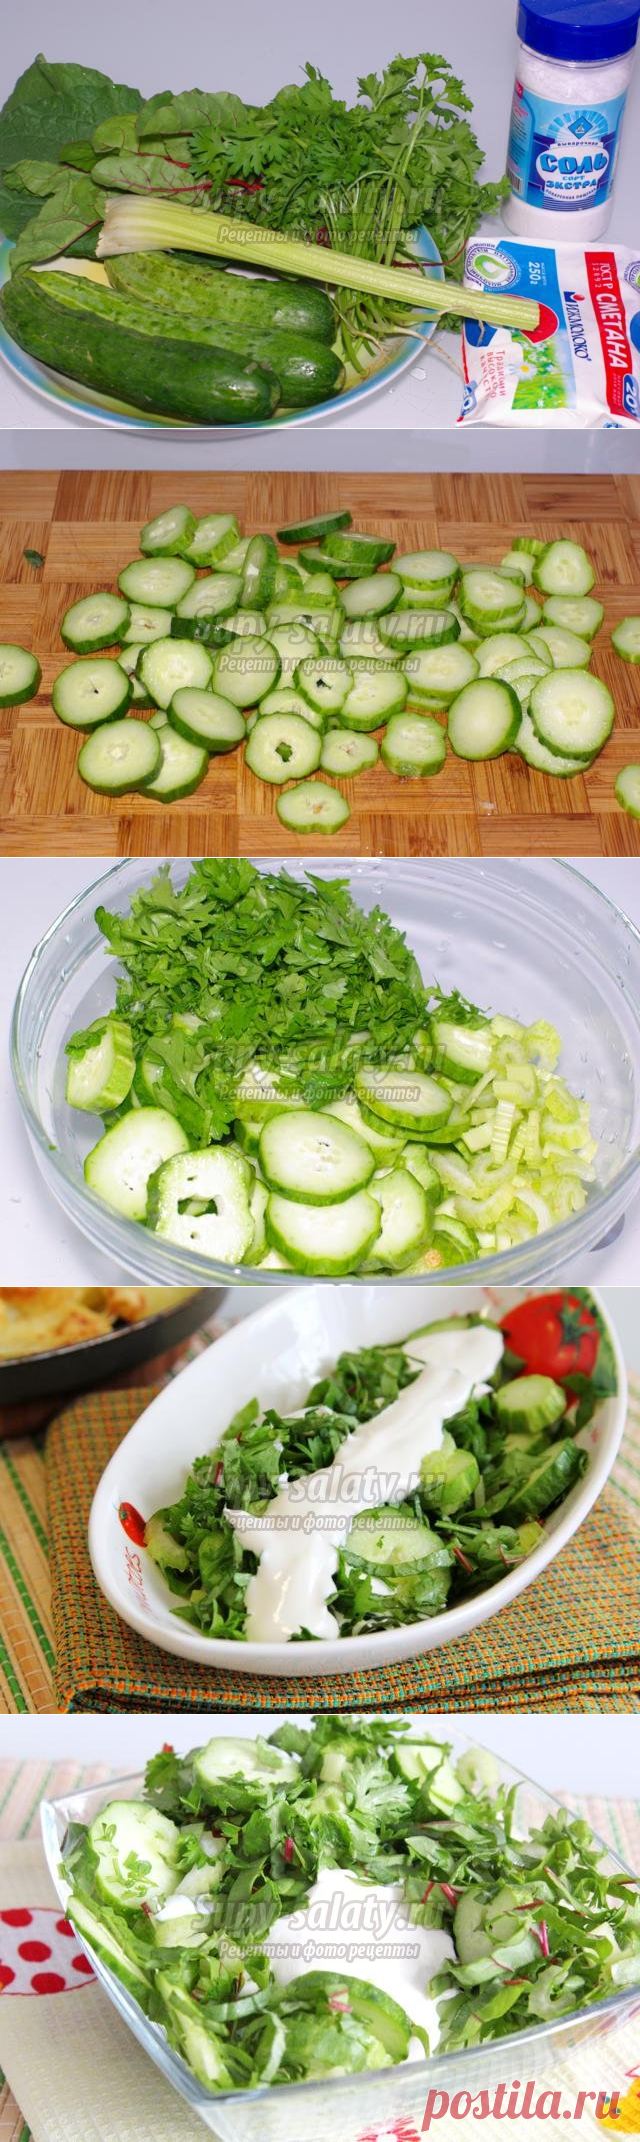 Зеленый салат с мангольдом и бораго. Рецепт с пошаговыми фото